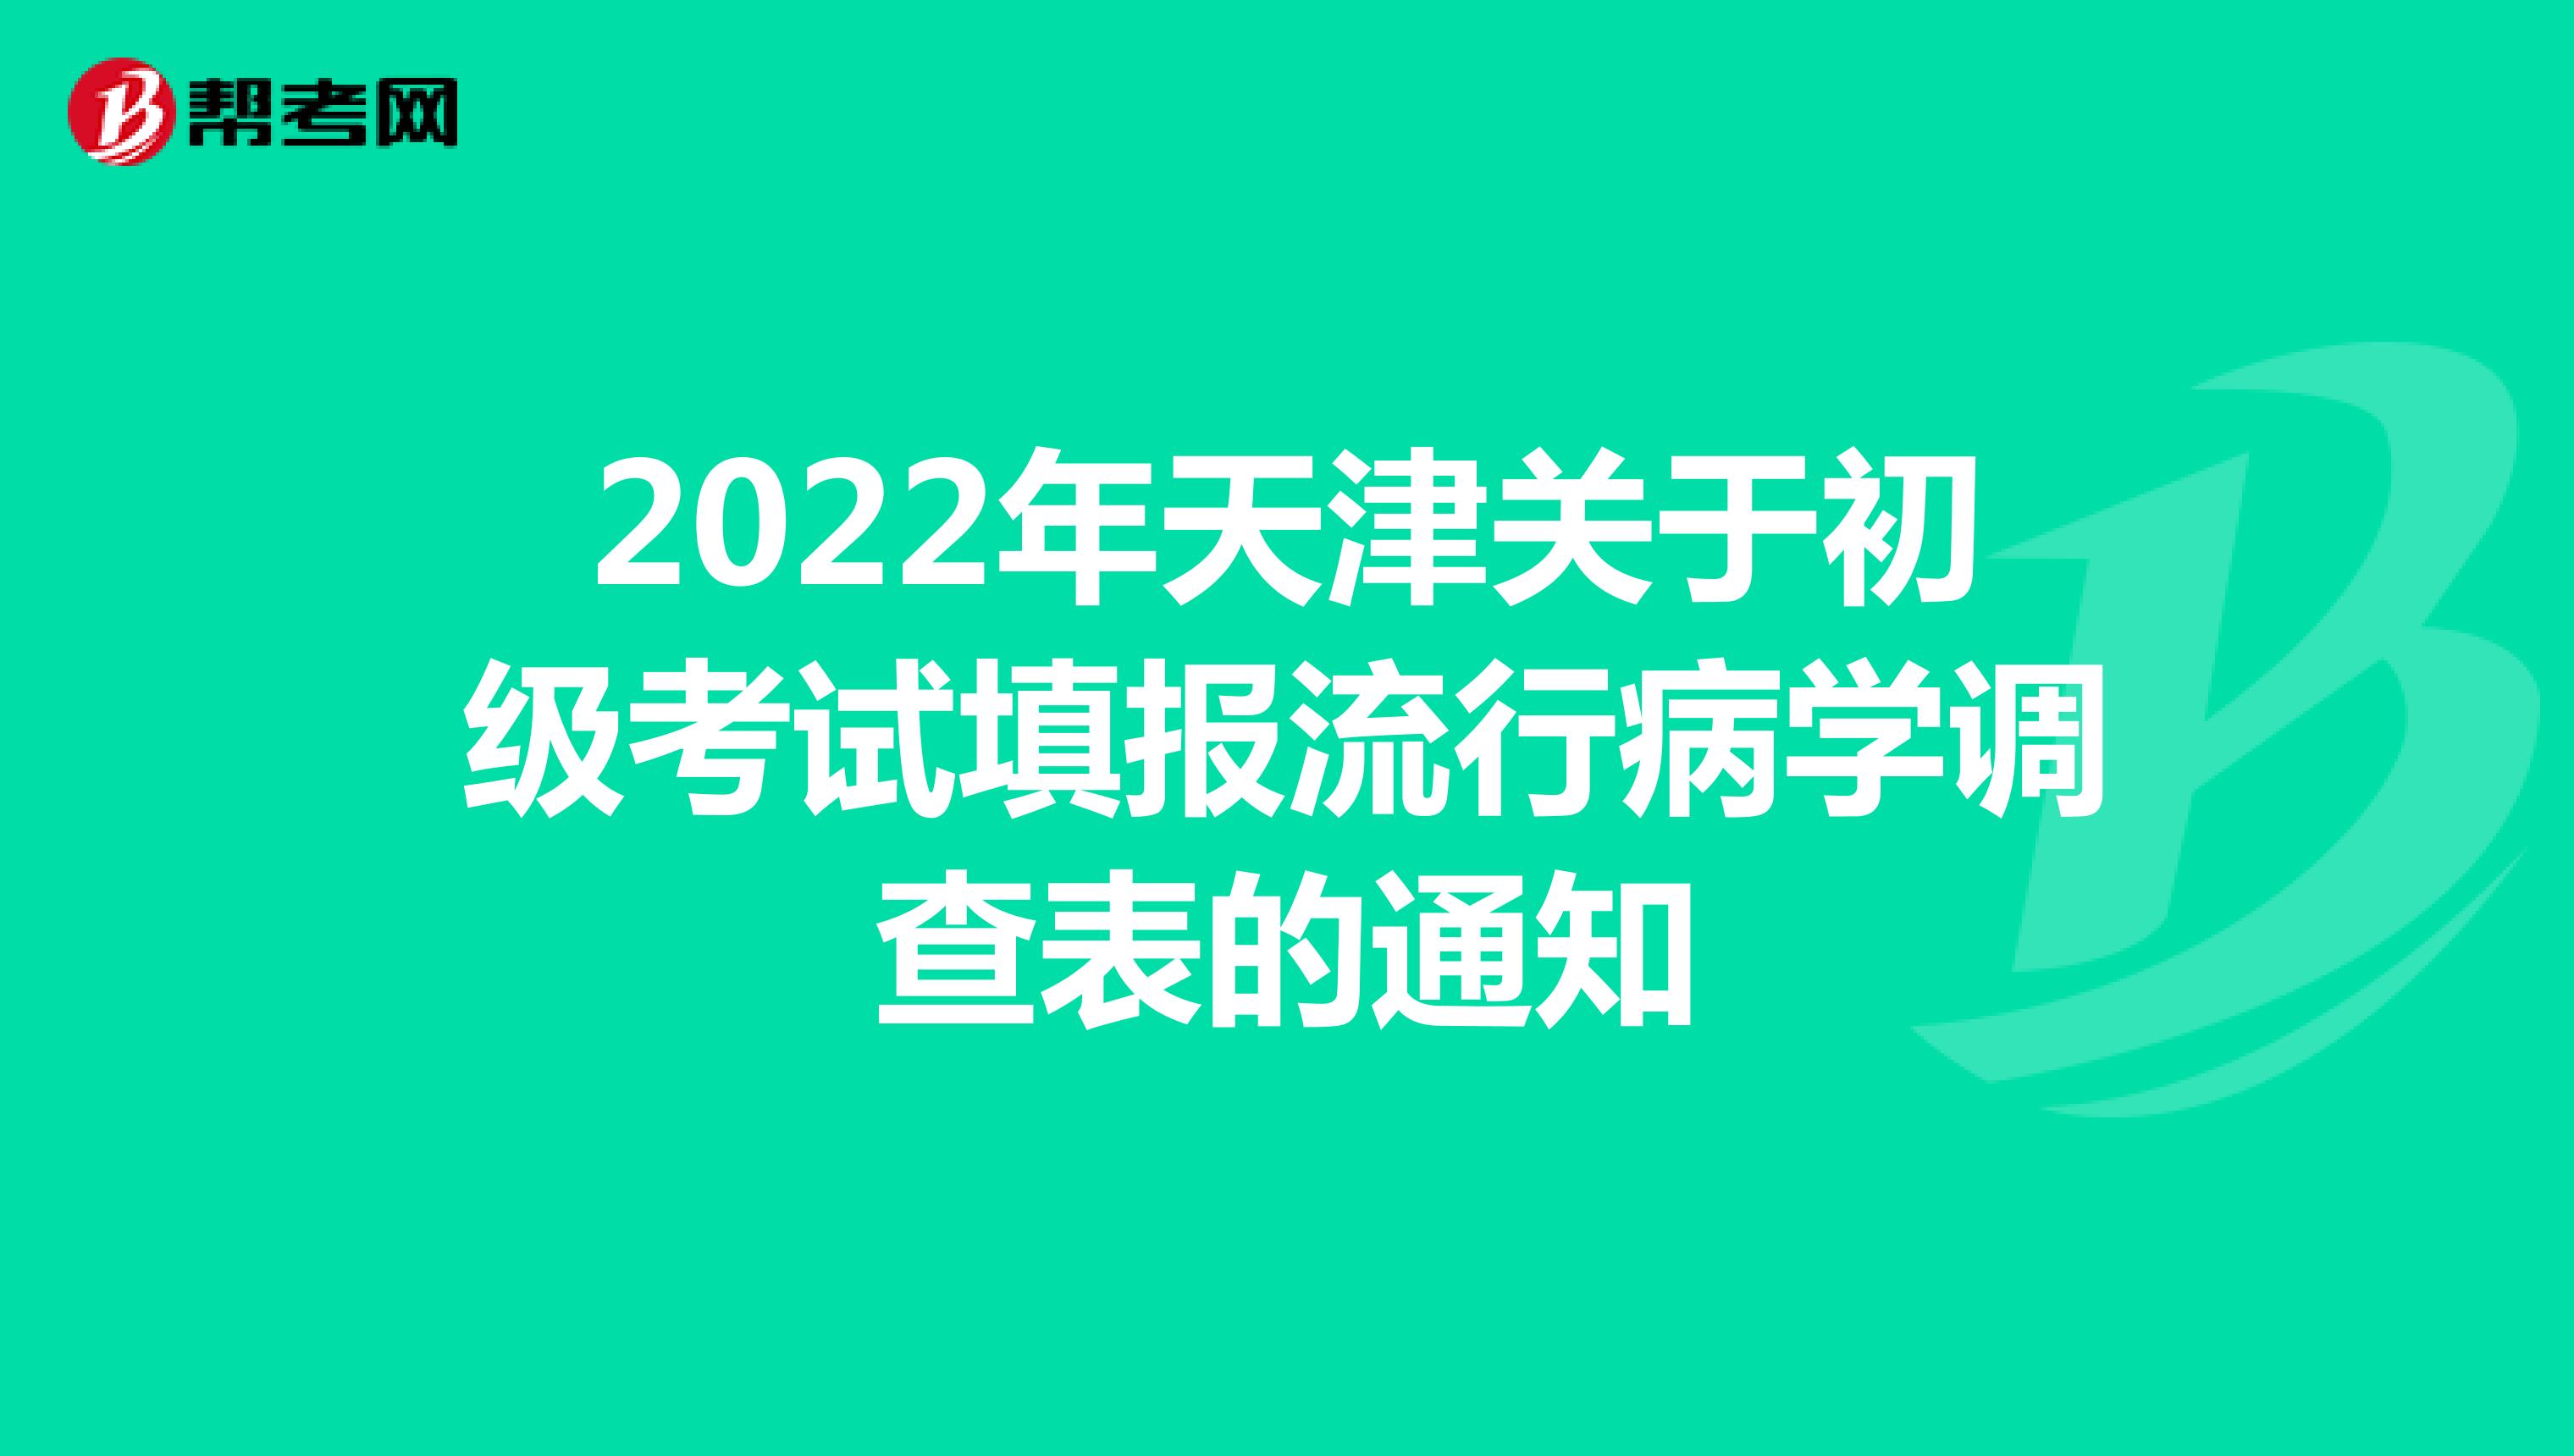 2022年天津关于初级考试填报流行病学调查表的通知